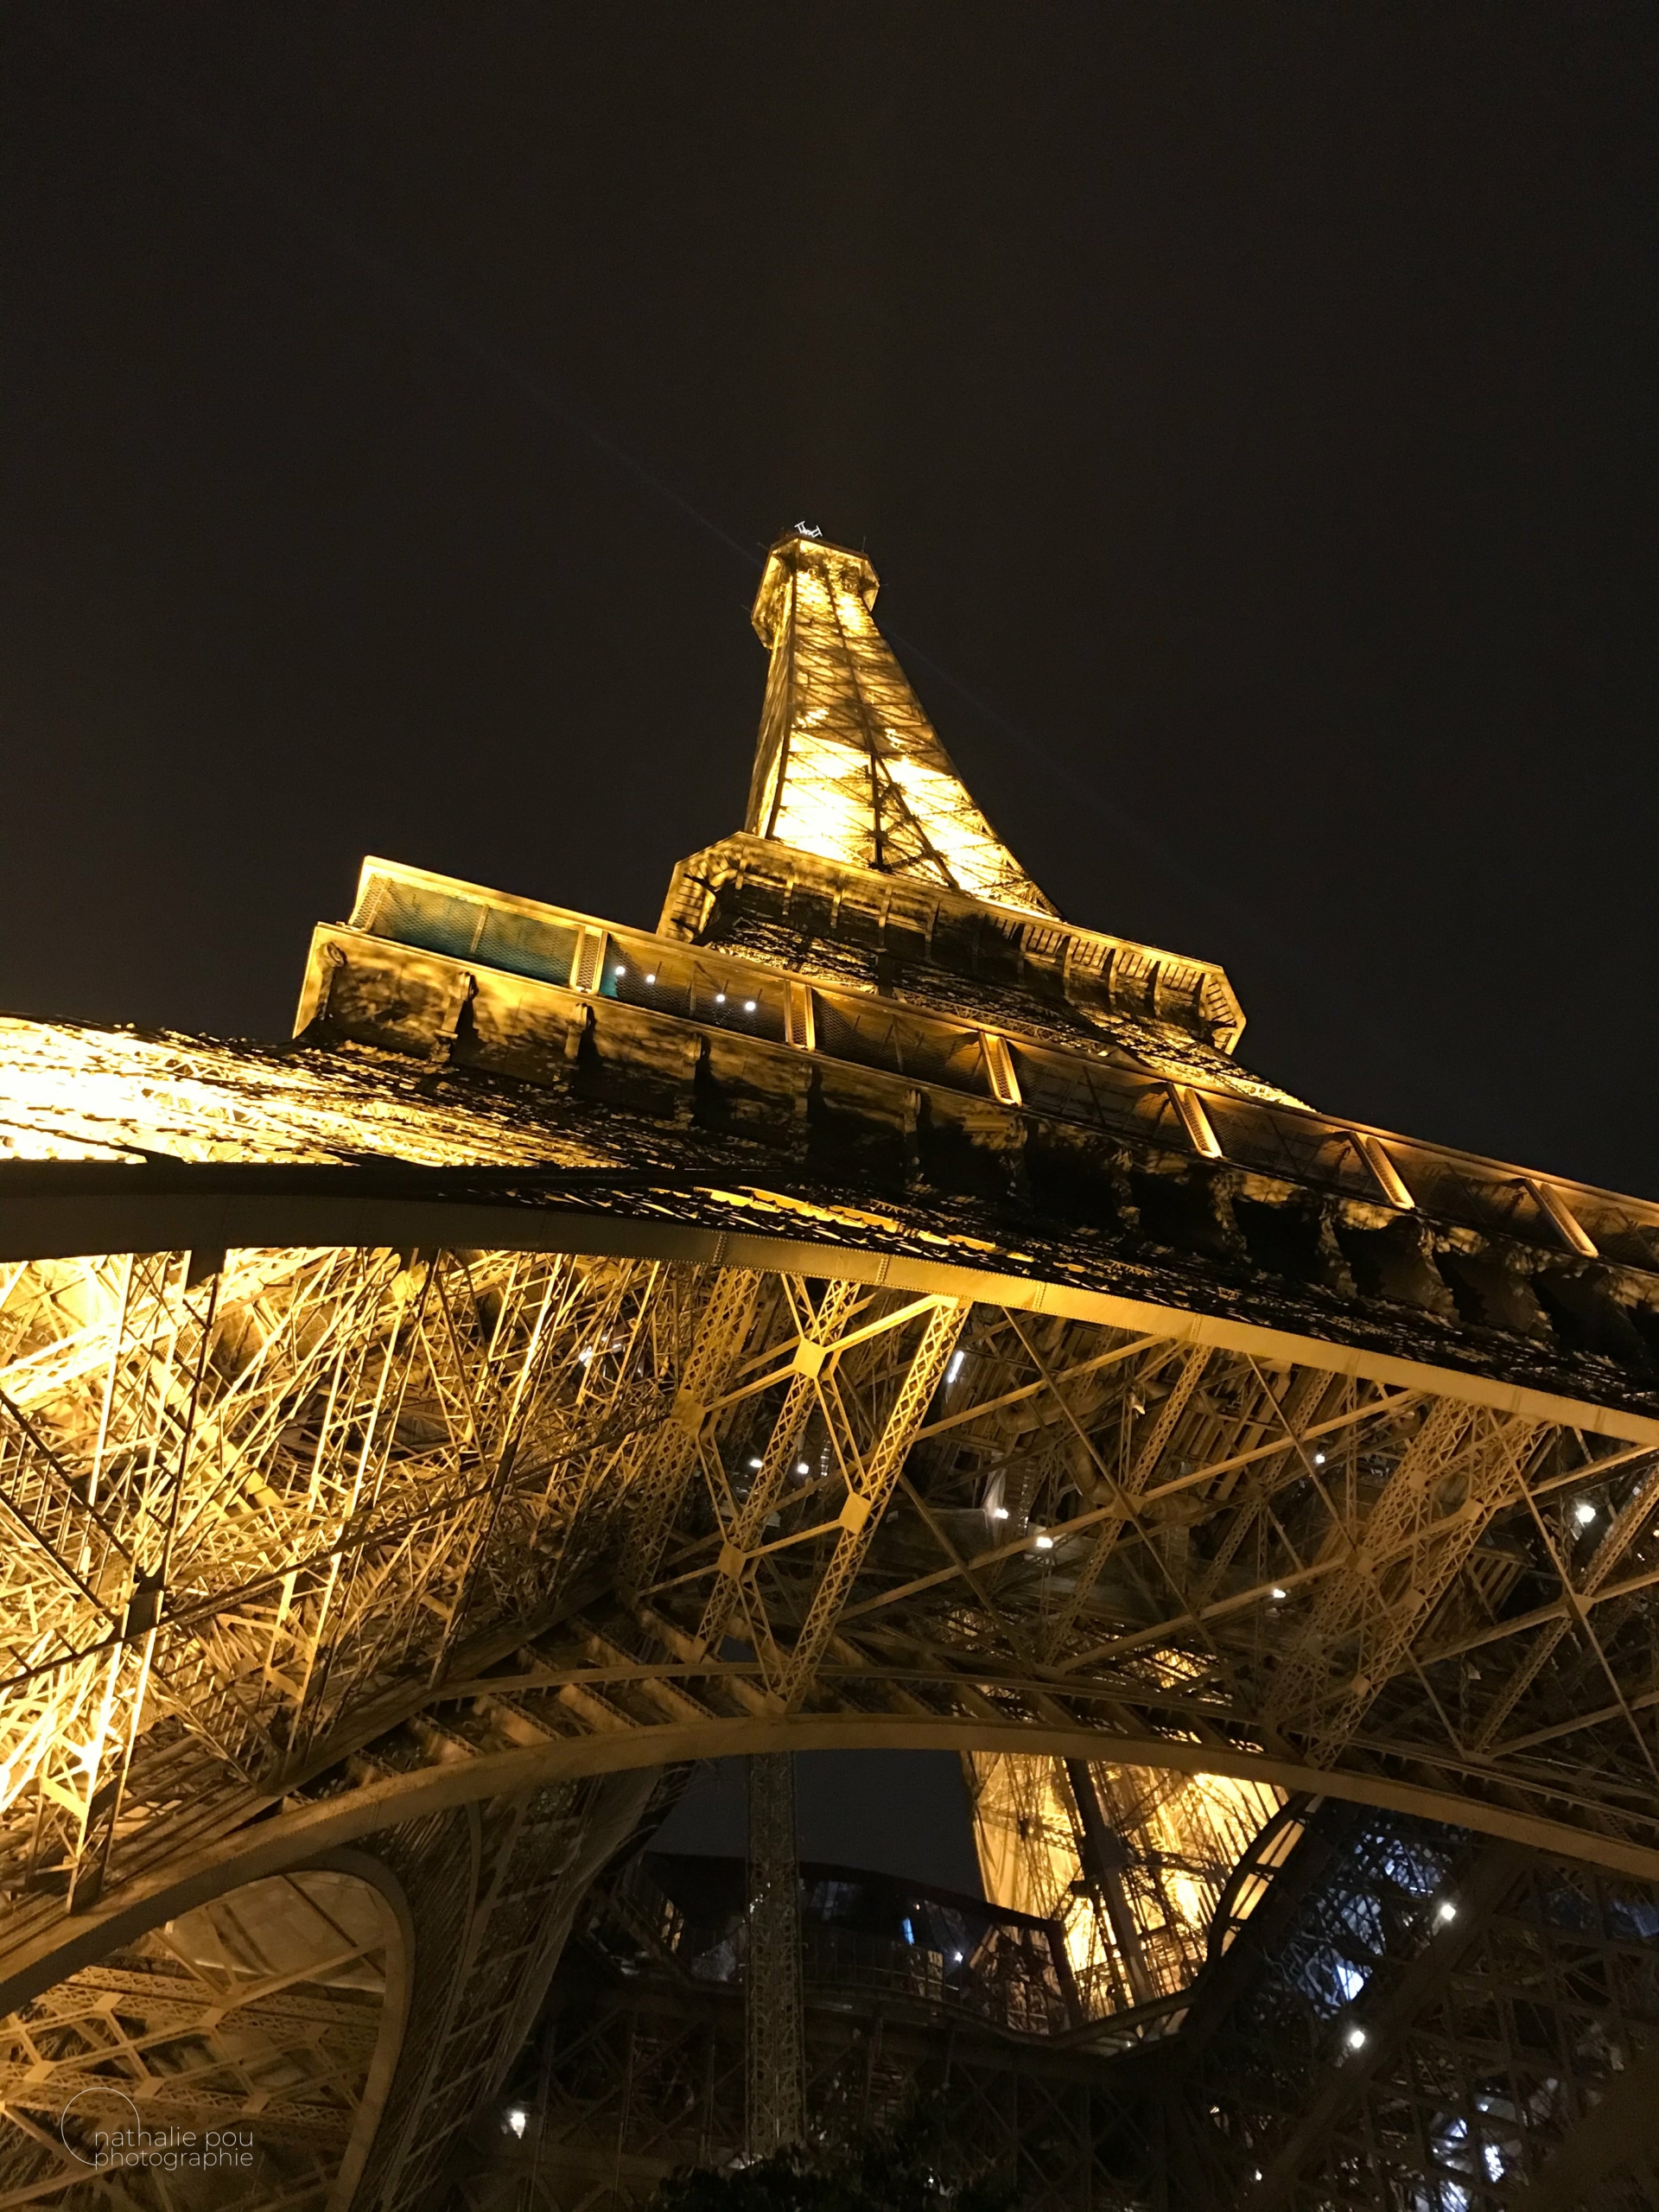 Photographe Architecture: La Tour Eiffel - Paris